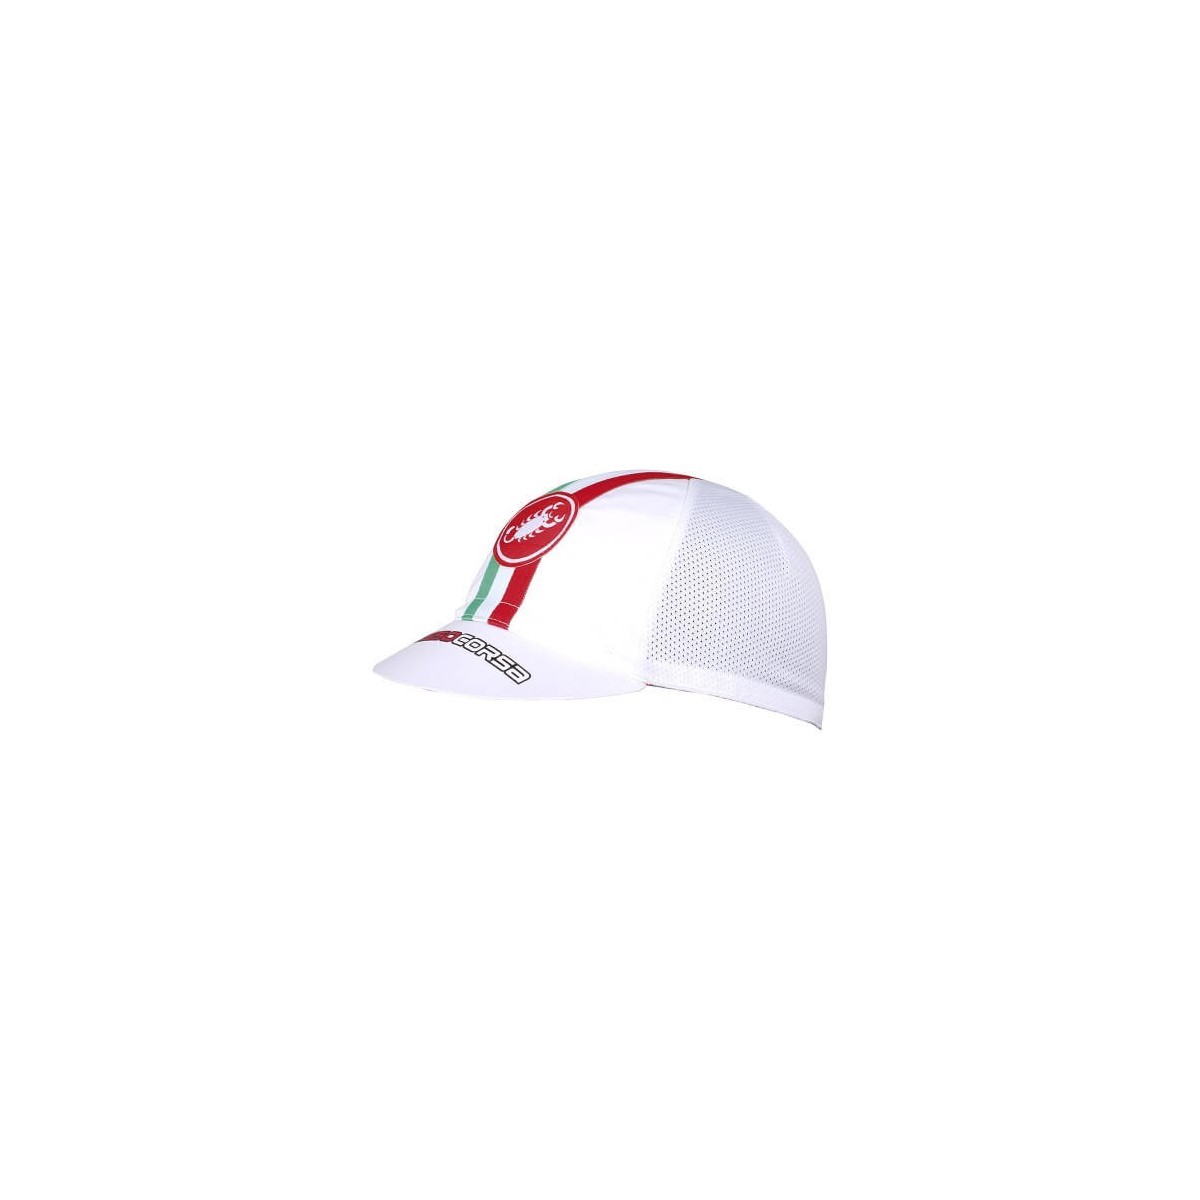 ST Performance günstig Kaufen-Castelli Performance White Cap. Castelli Performance White Cap <![CDATA[Es besteht aus einem hoch atmungsaktiven Material und eignet sich perfekt für einen lässigen Stil oder zum Tragen im Radsporttraining unter dem Helm.]]>. 